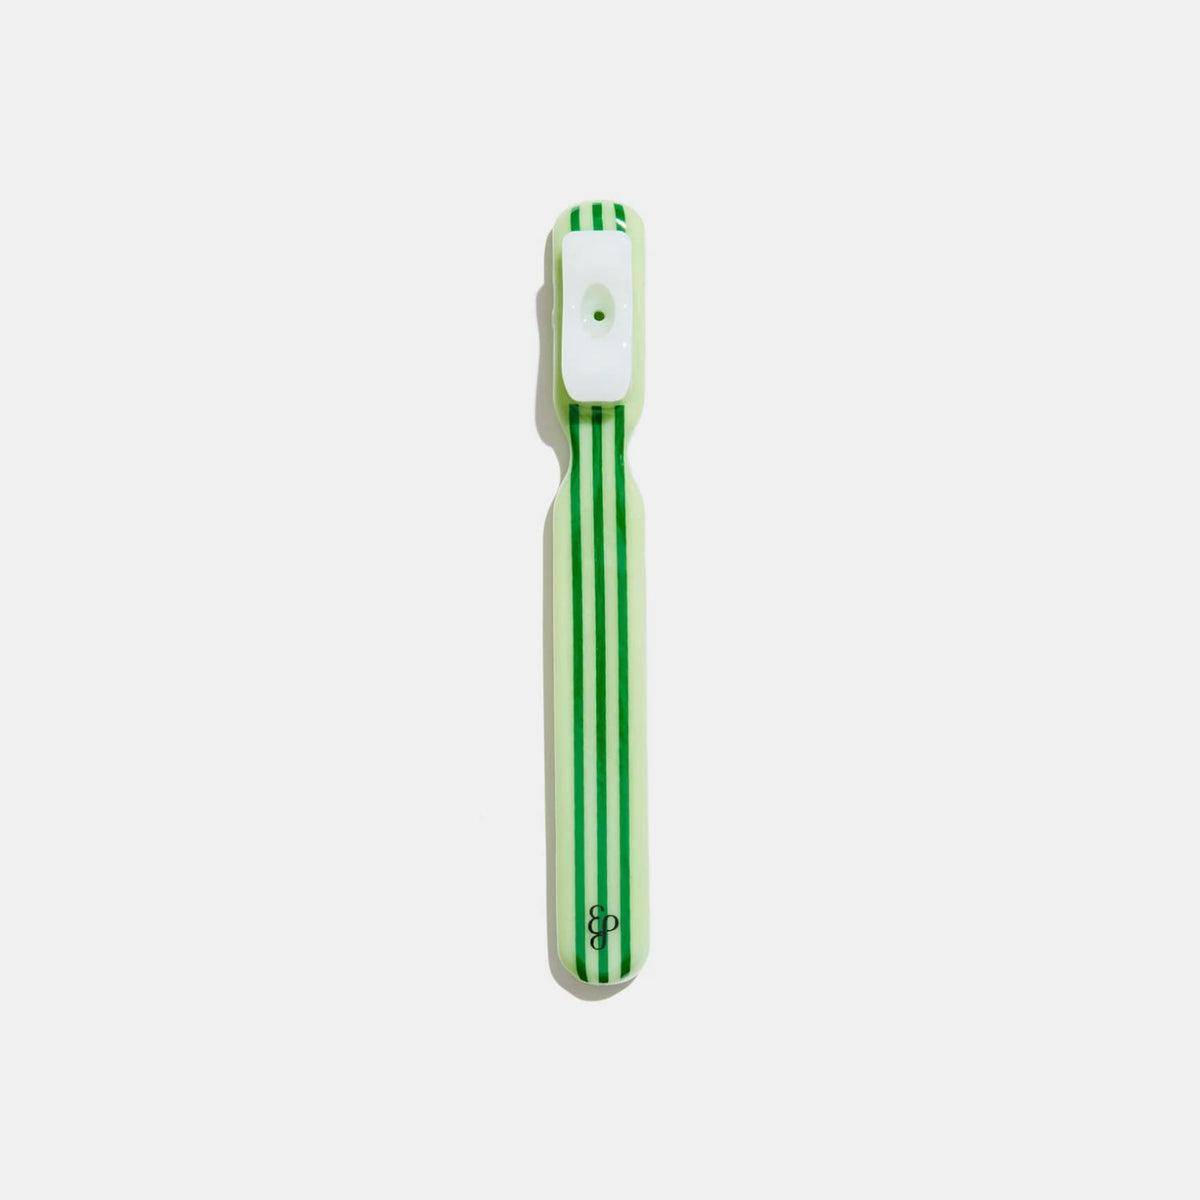 Edie Parker Toothbrush Pipe - Green Edie Parker - Gag Gift